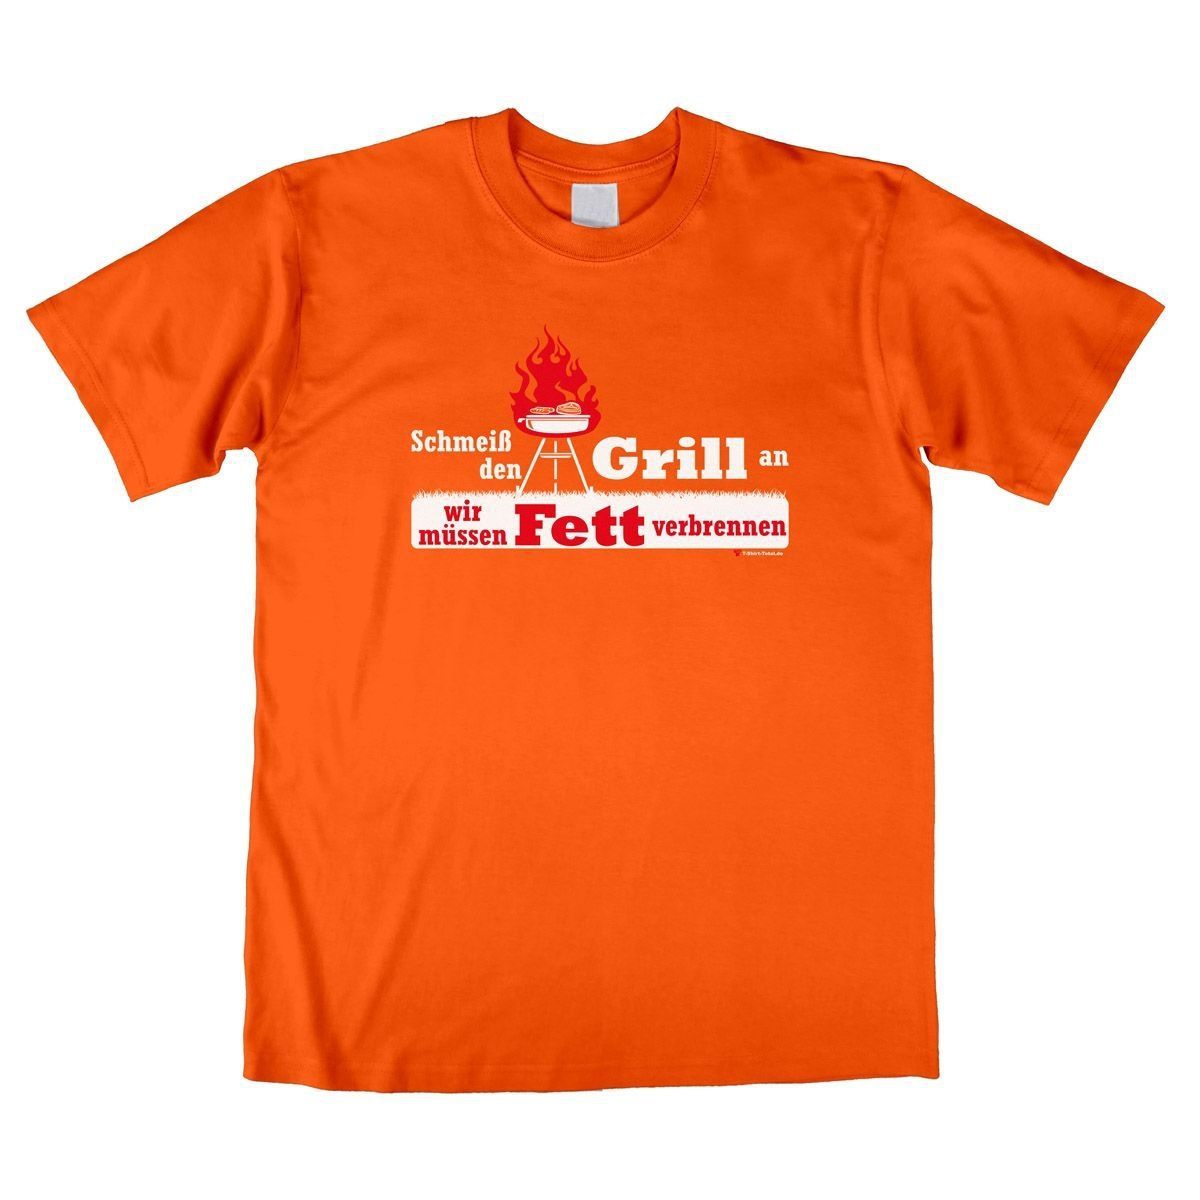 Fett verbrennen Unisex T-Shirt orange Large